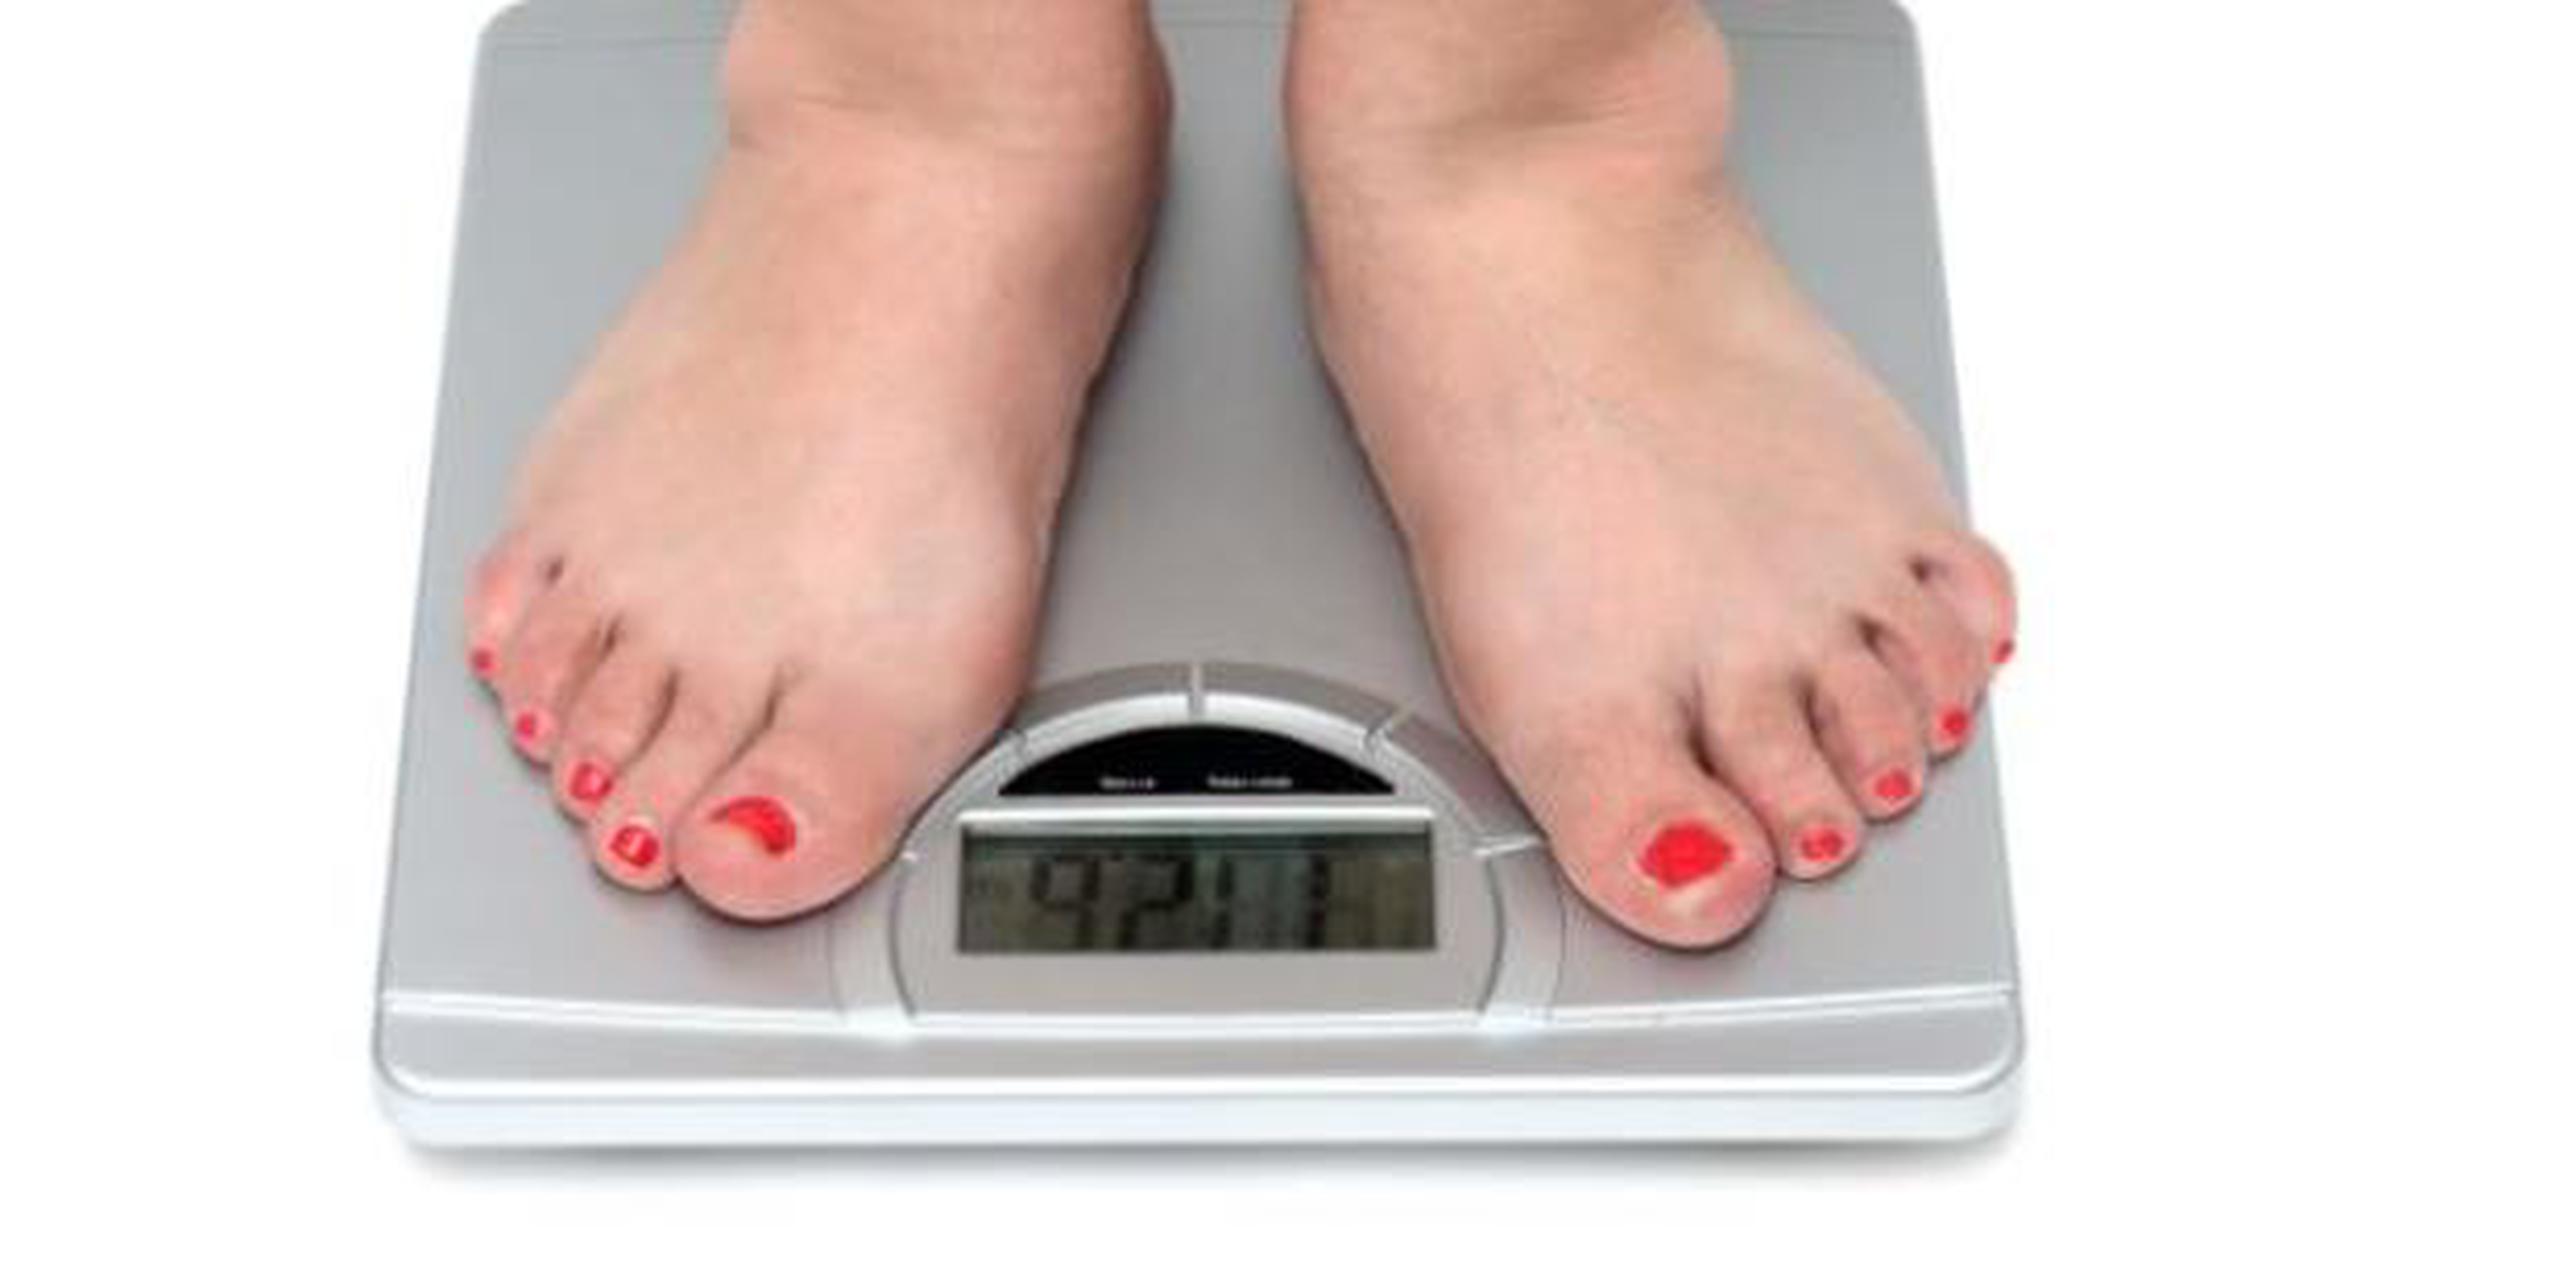 El sobrepeso en adultos aumenta el riesgo de padecer trece tipos diferentes de cáncer, incluidos el de mama, intestino, tiroides, hígado y riñón. (Archivo)